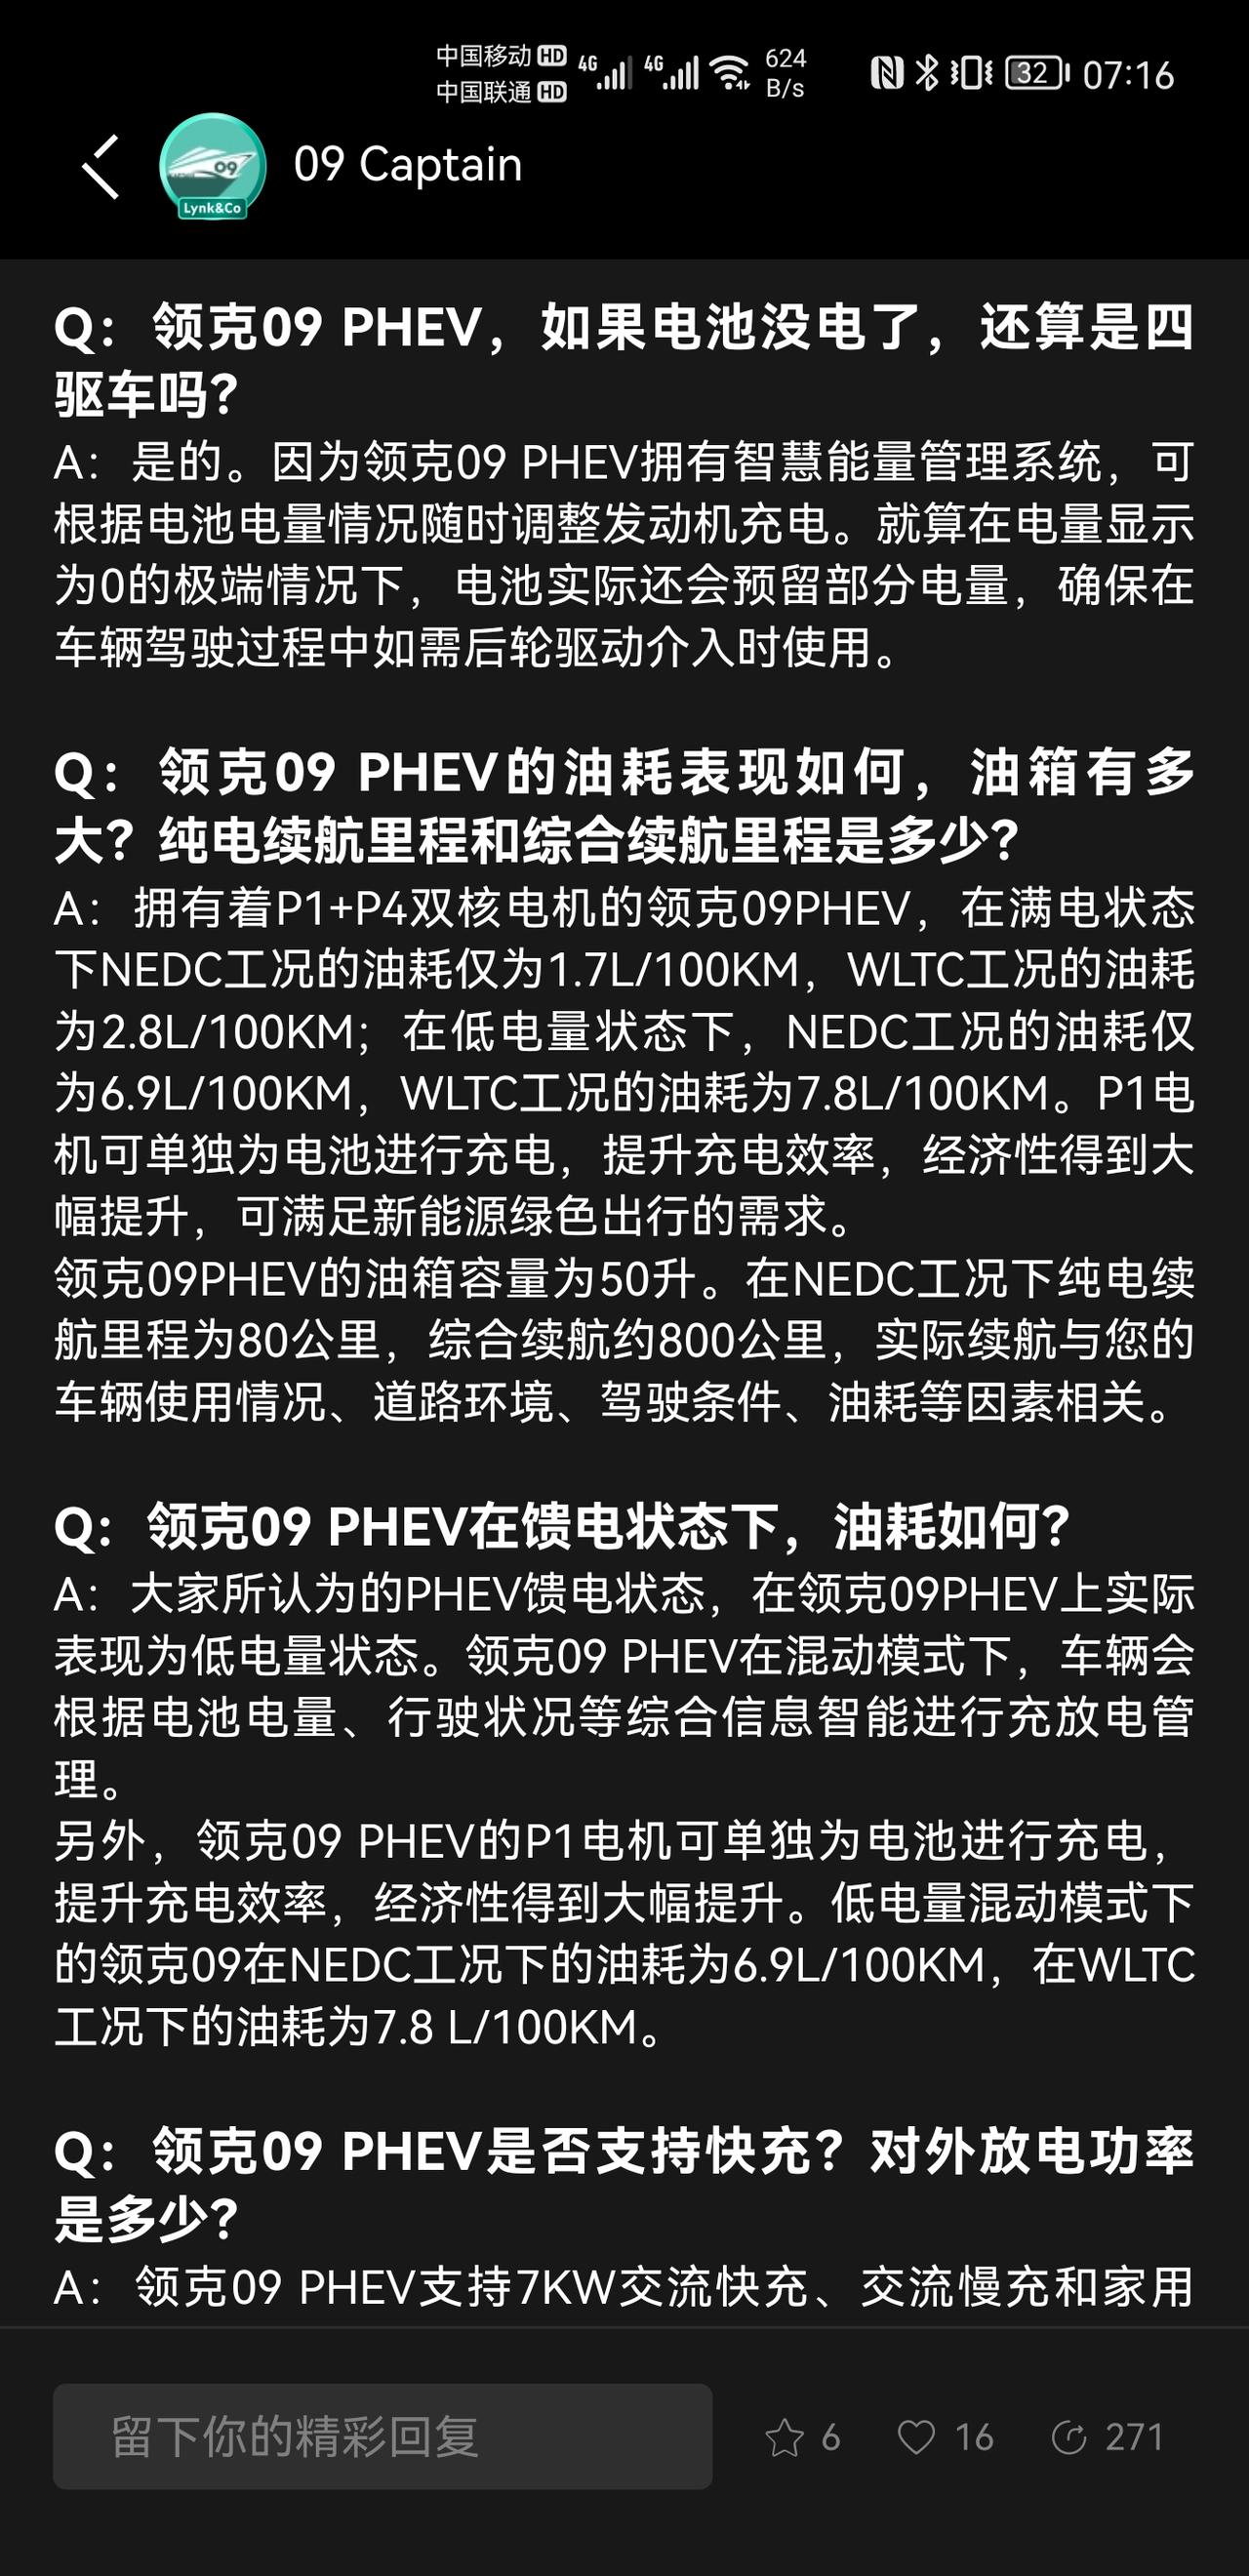 领克09 官方显示在wltc工况下phev馈电行驶的油耗为7.8L，而mhev的油耗为9L，而且之前的评测中也提到馈电状